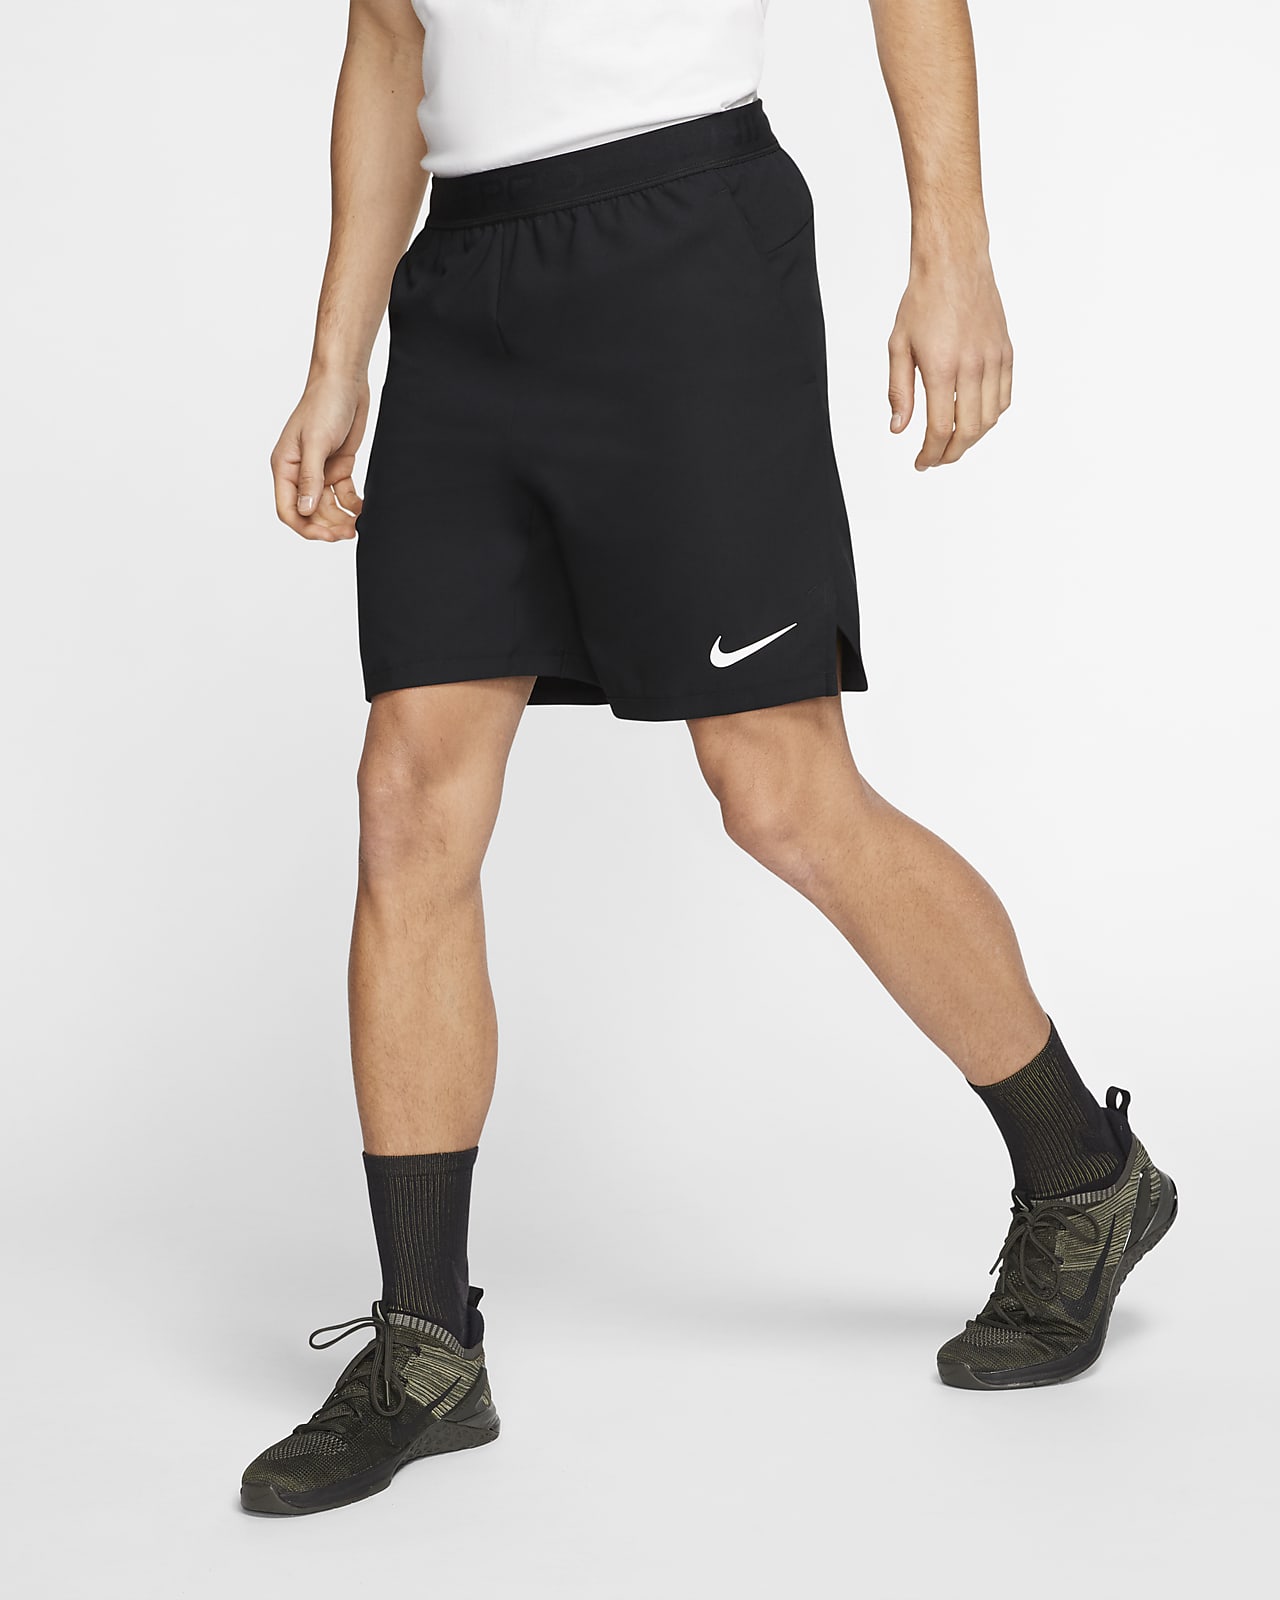 Calções Nike Pro Flex Vent Max para homem